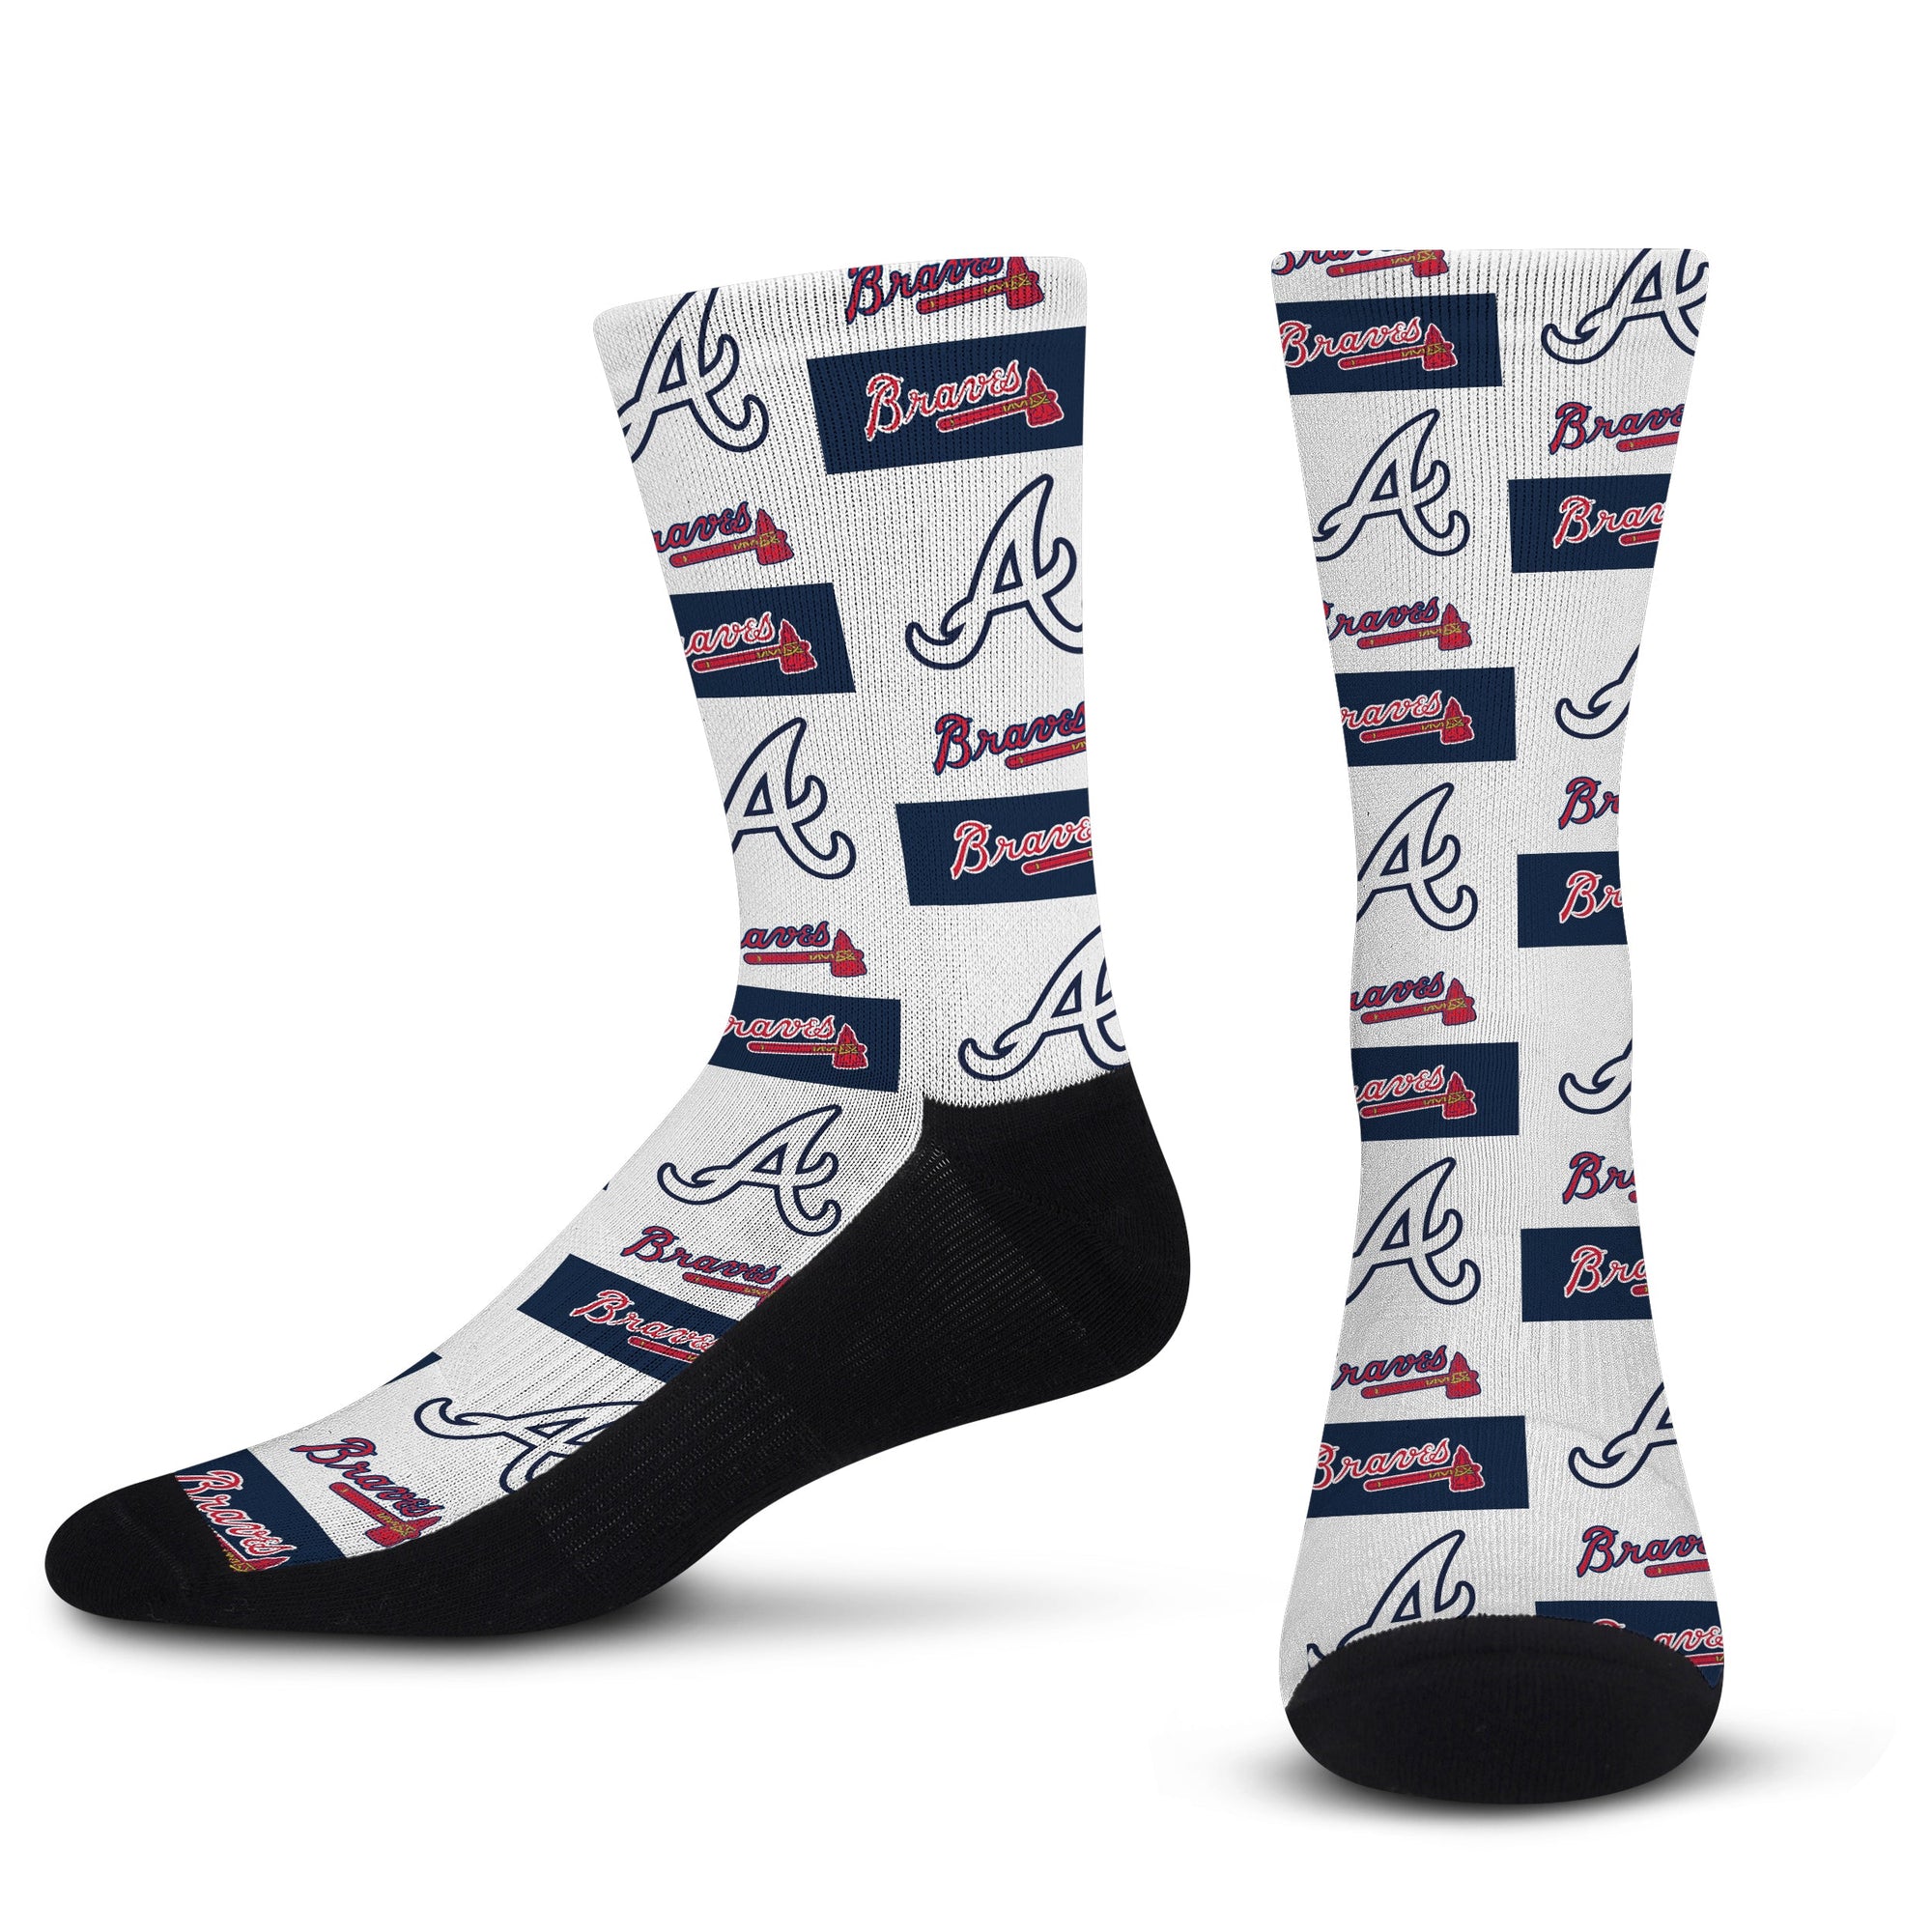 Officially Licensed MLB Atlanta Braves Poster Print Socks, Size Large/XL | for Bare Feet